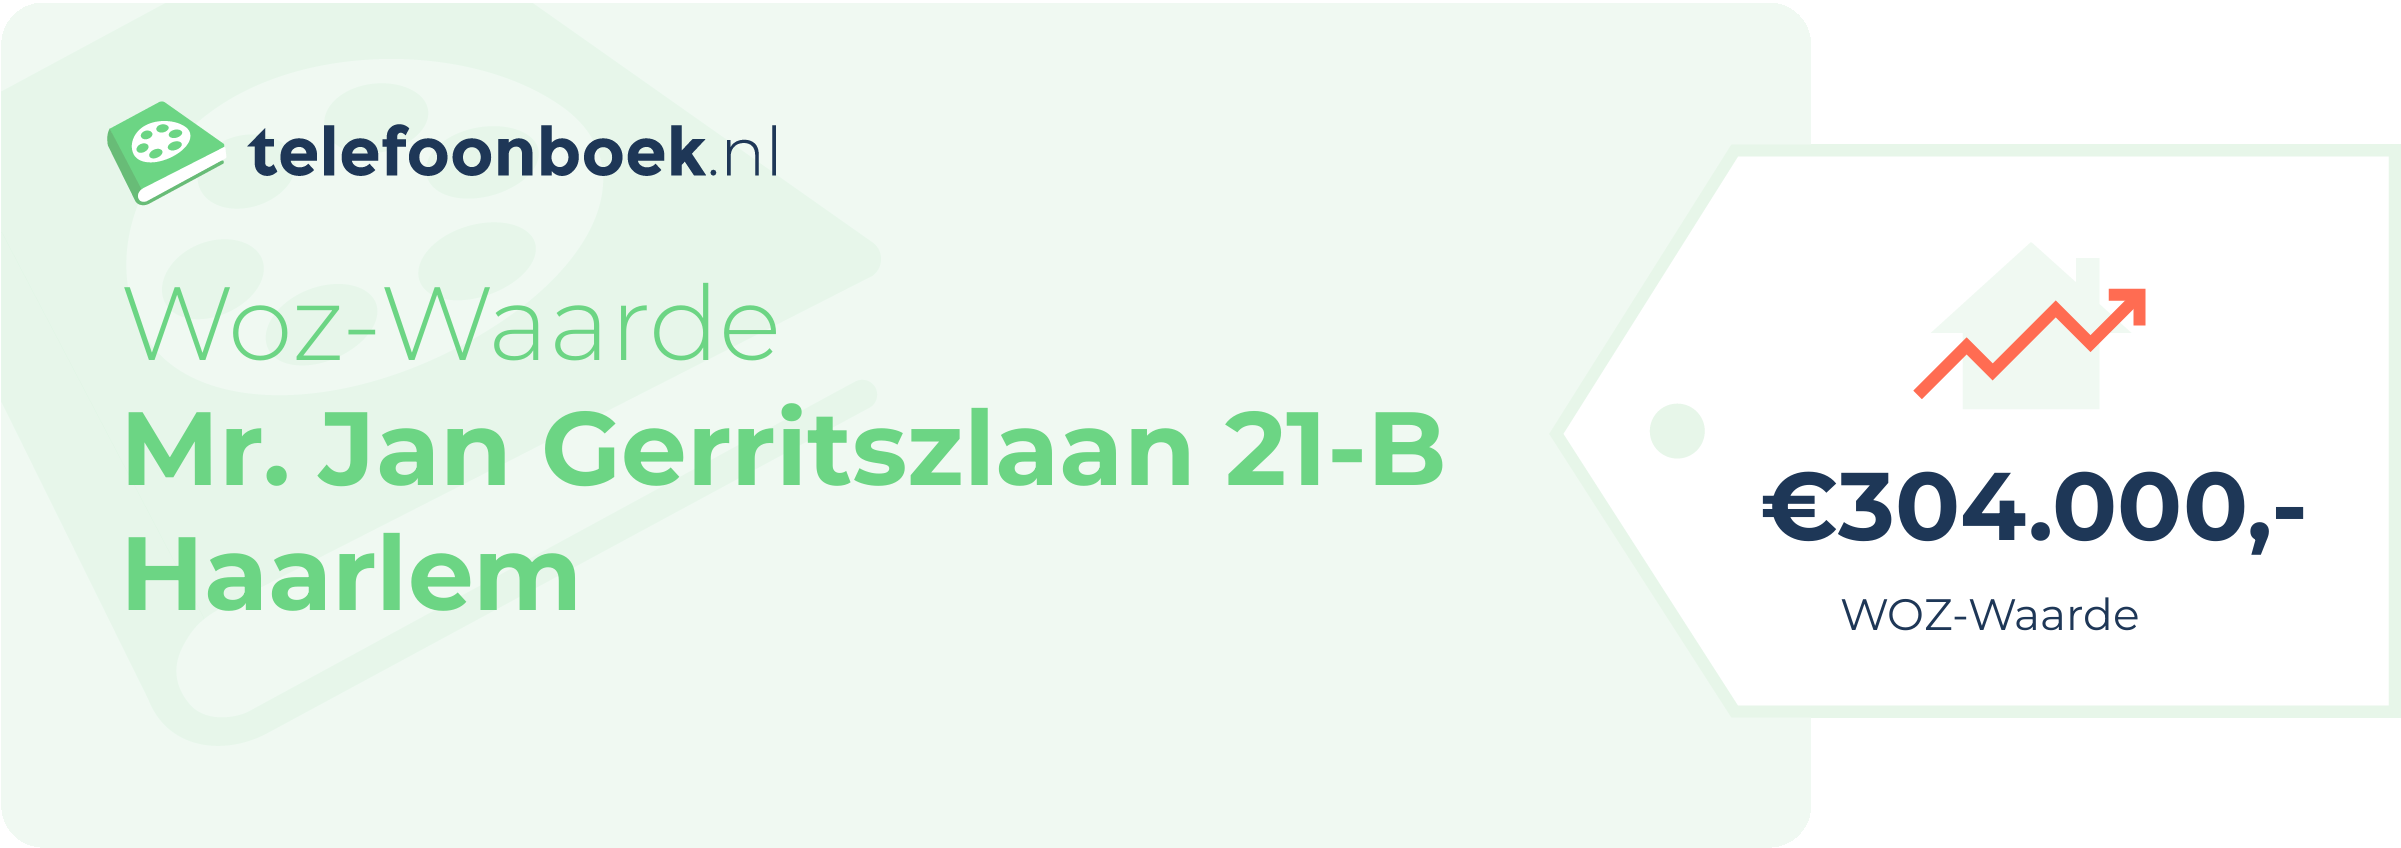 WOZ-waarde Mr. Jan Gerritszlaan 21-B Haarlem